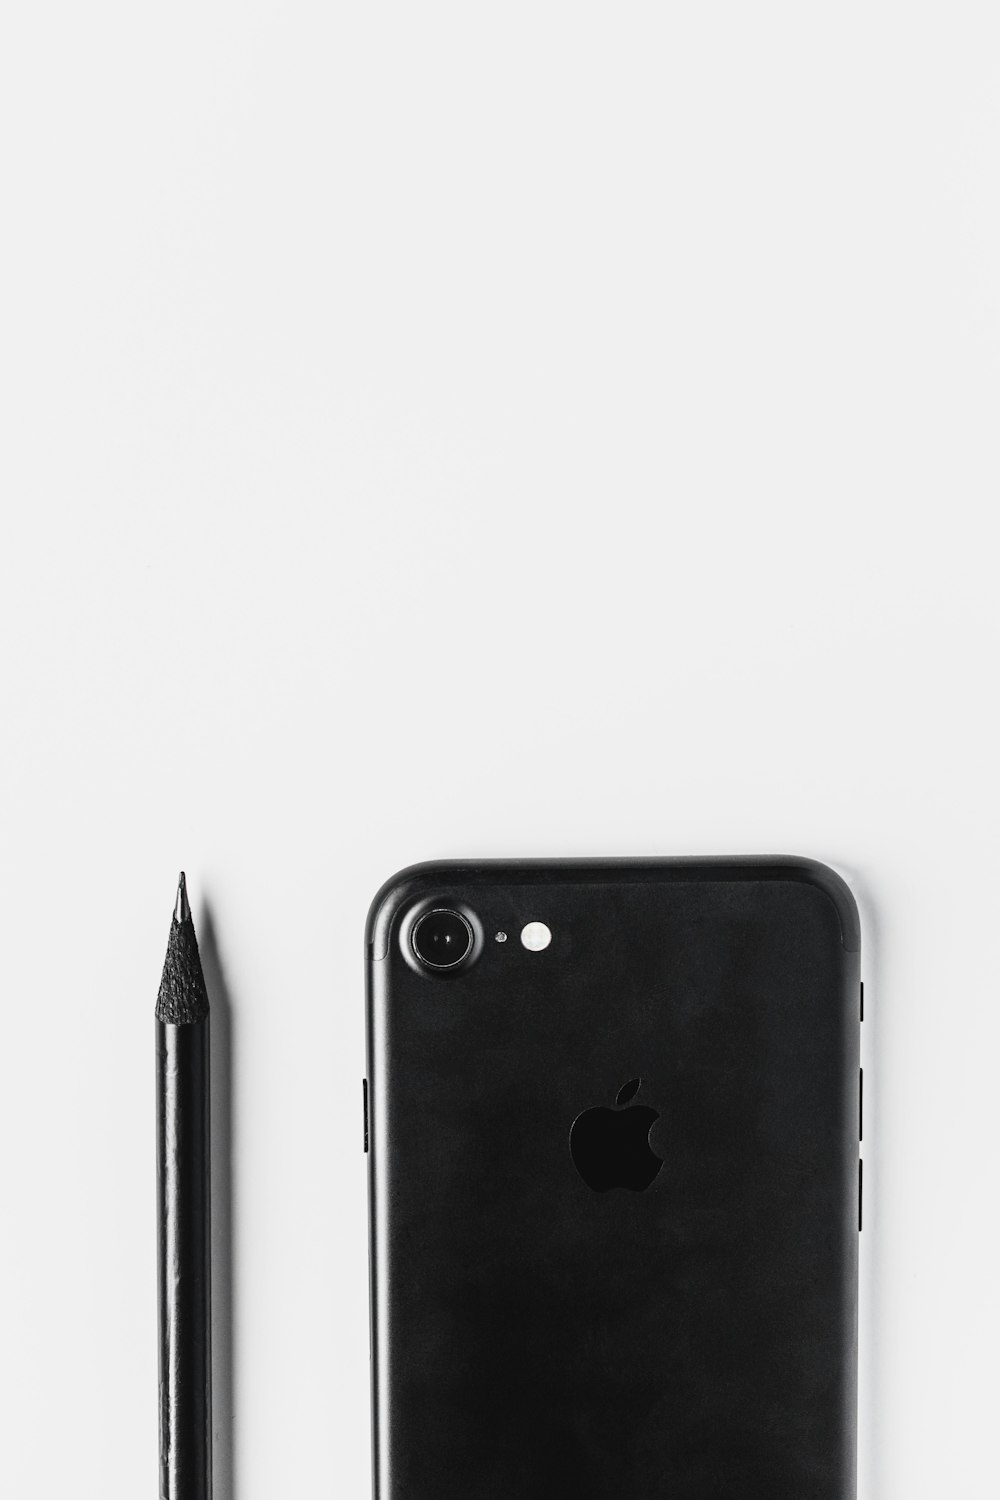 Schwarzes iPhone 7 Plus neben schwarzem Stift